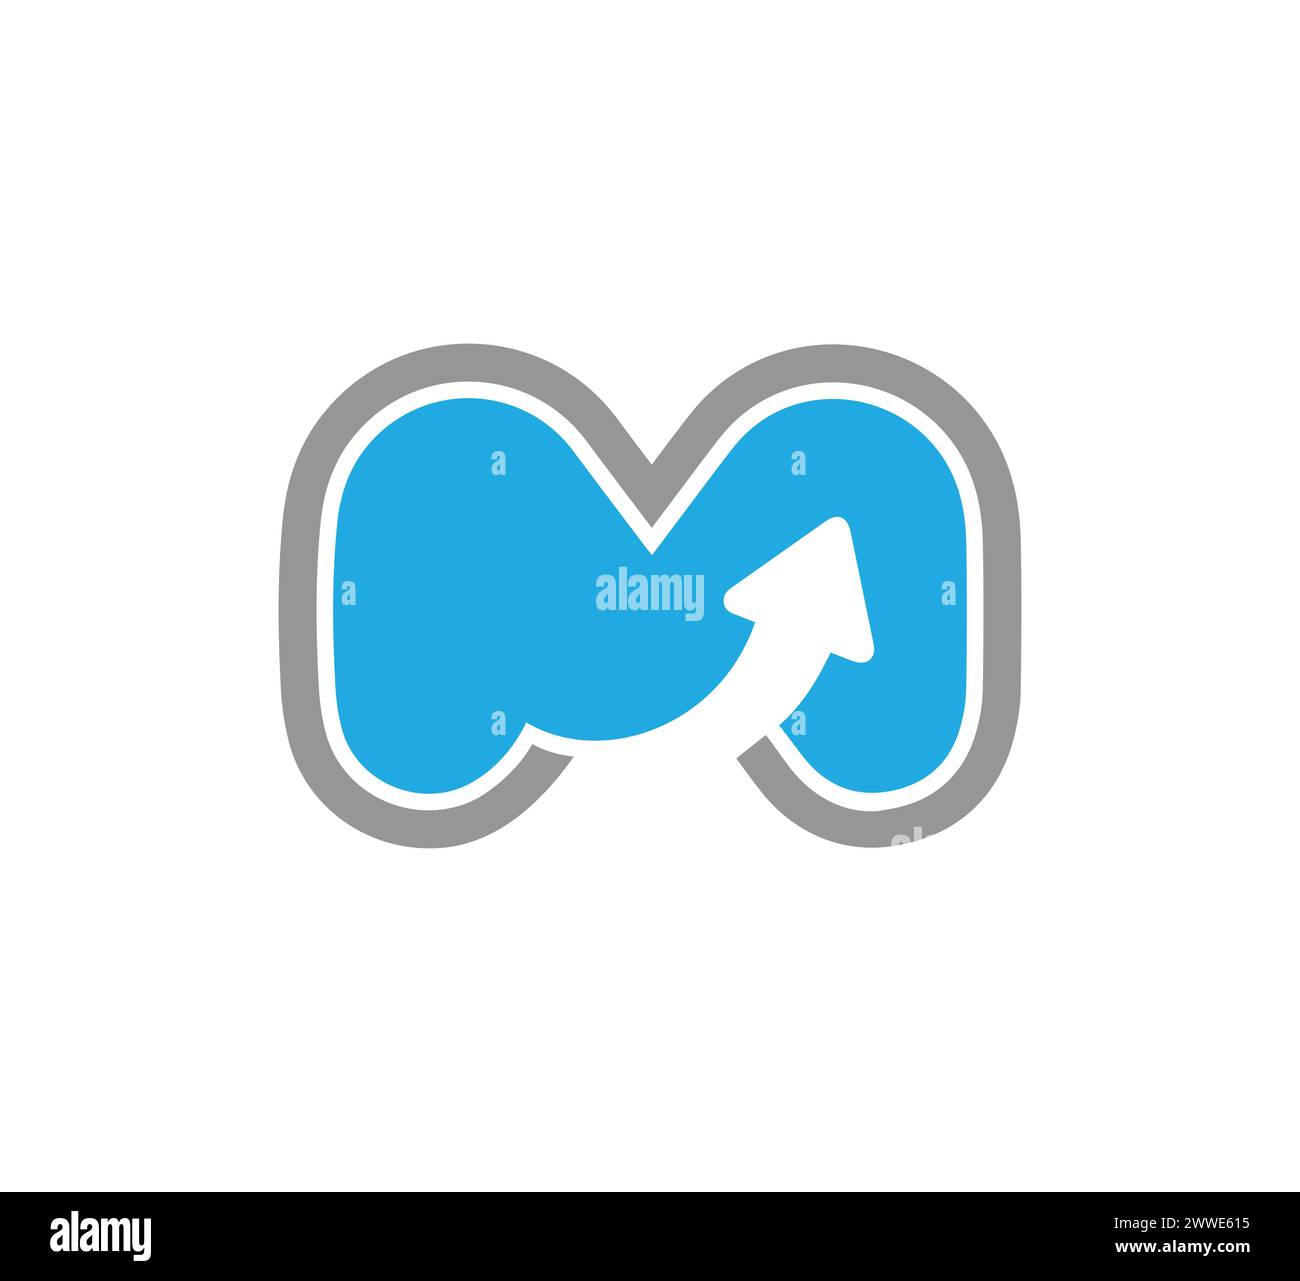 mm letter logo and m letter logo design vector Stock Vector